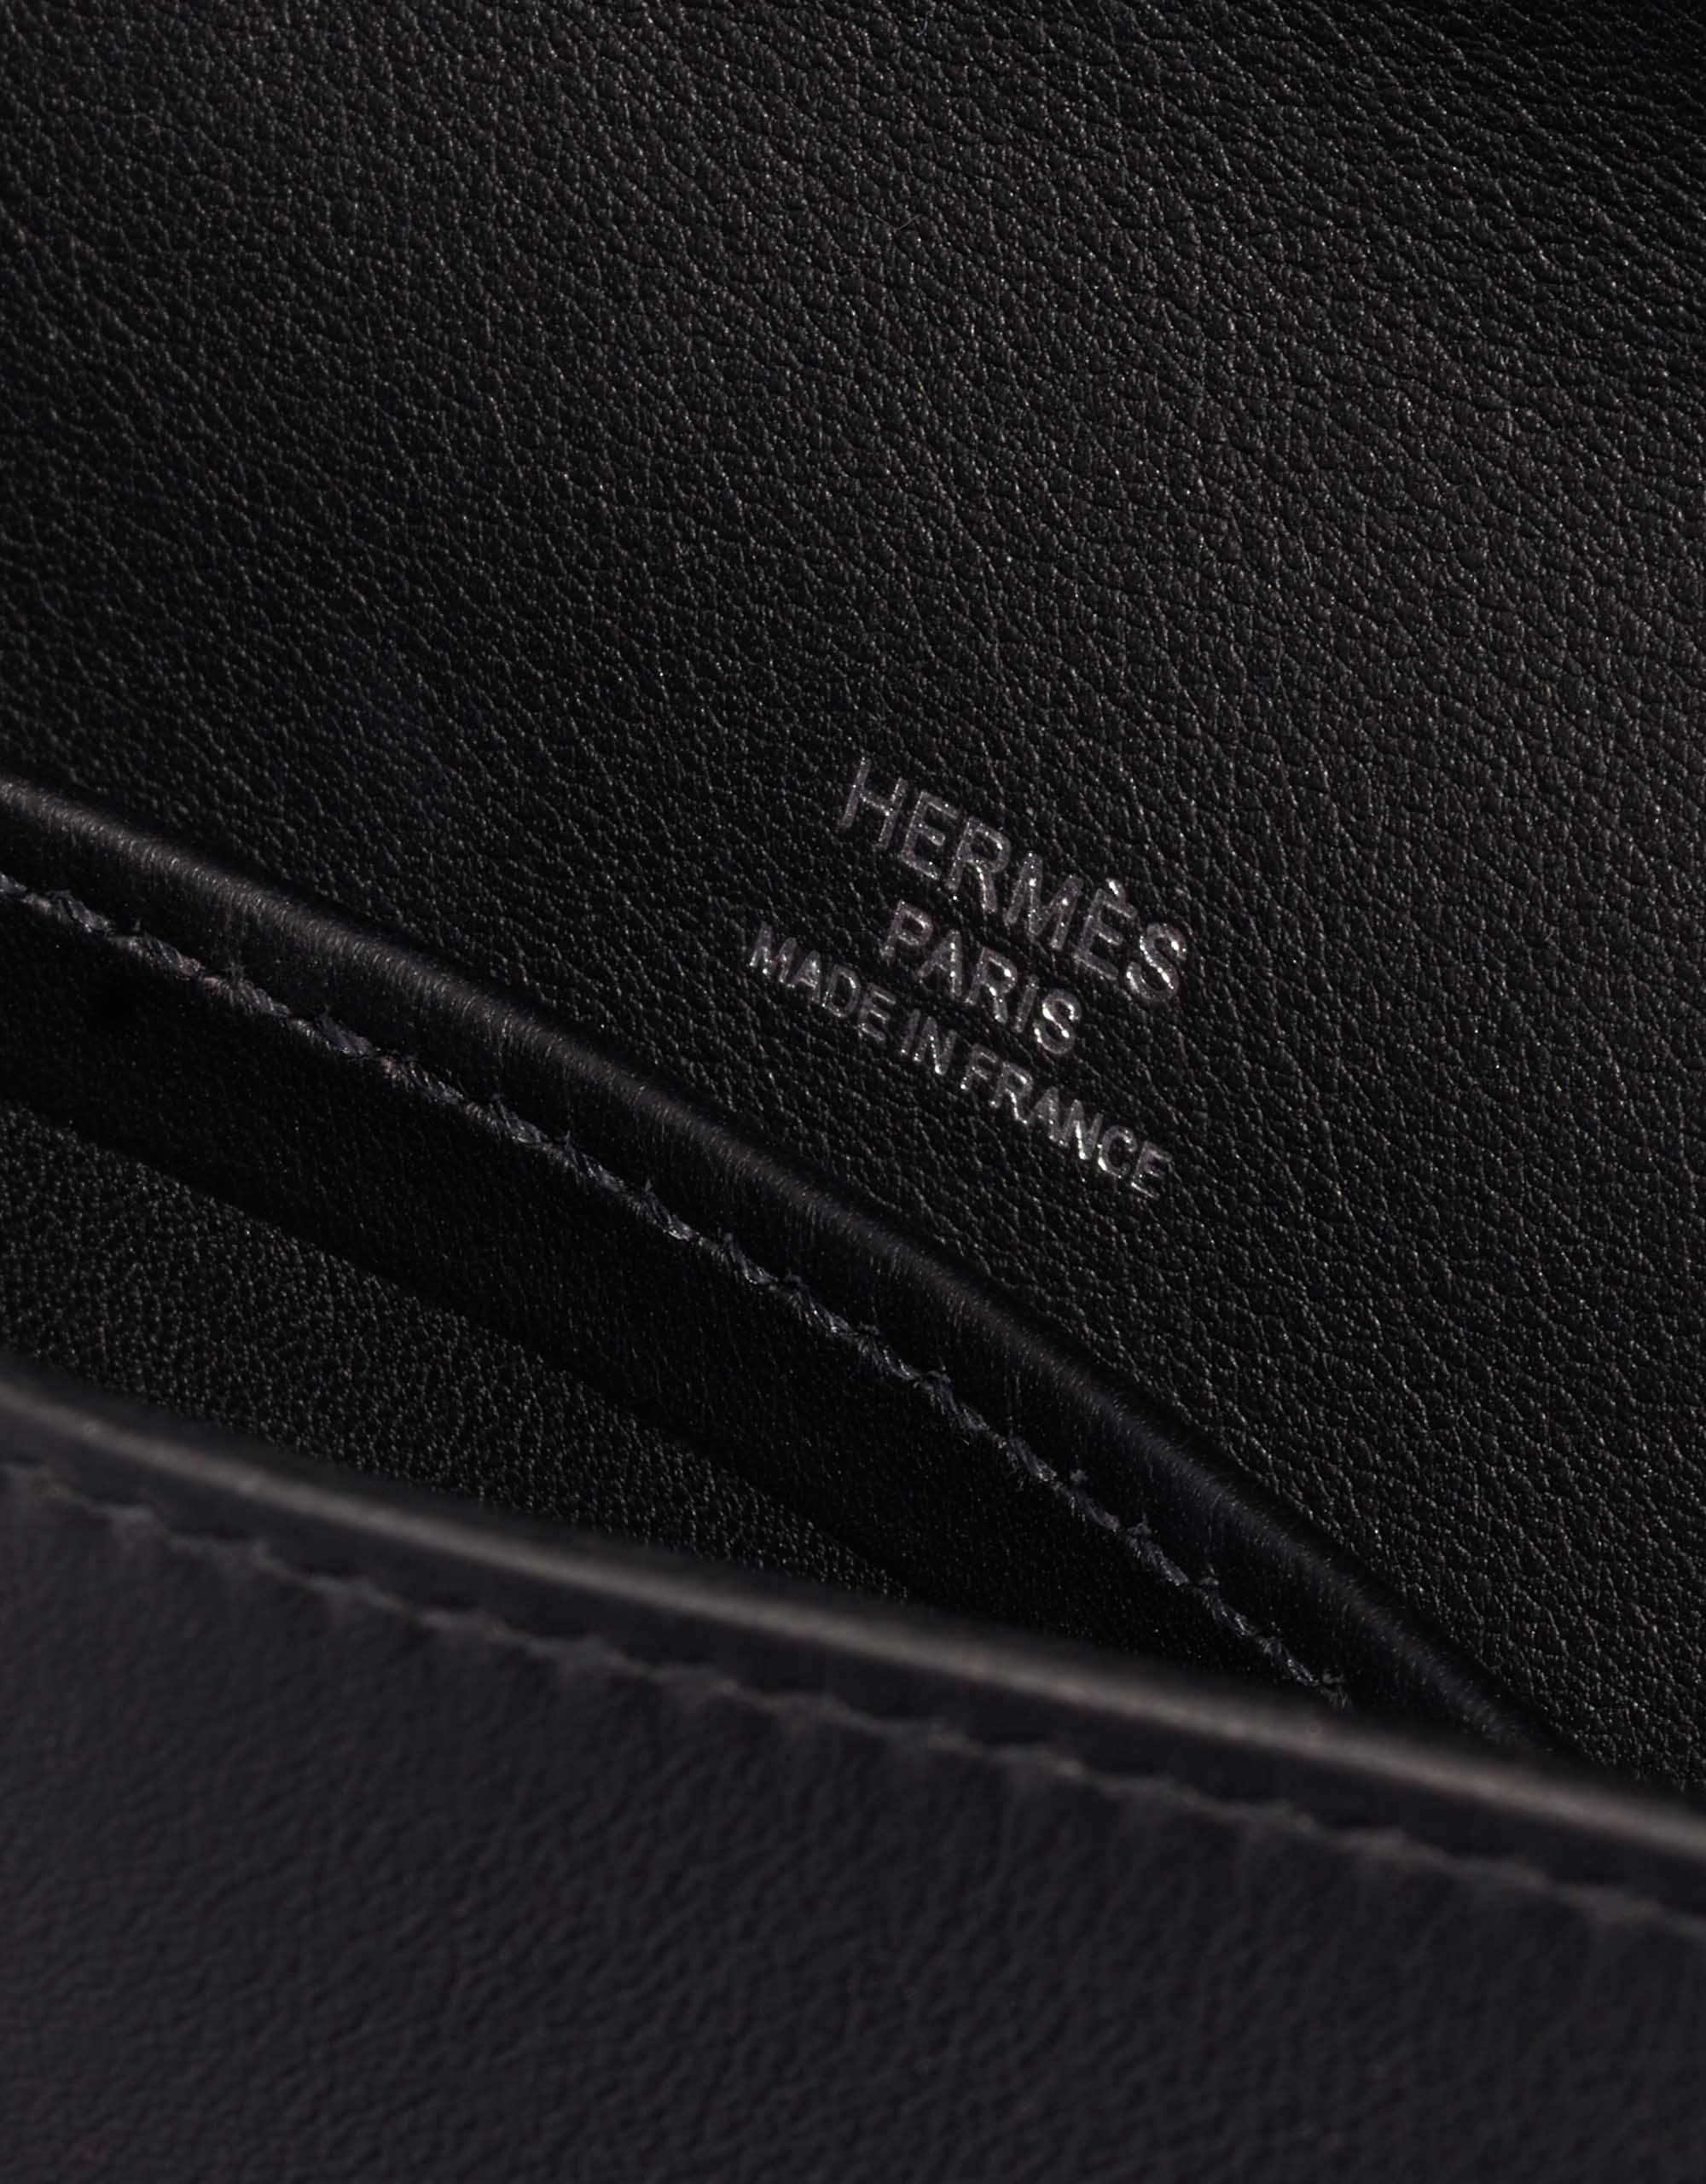 Sac d'occasion Hermès Kelly Cut Clutch Swift Black Black Logo | Vendez votre sac de créateur sur Saclab.com